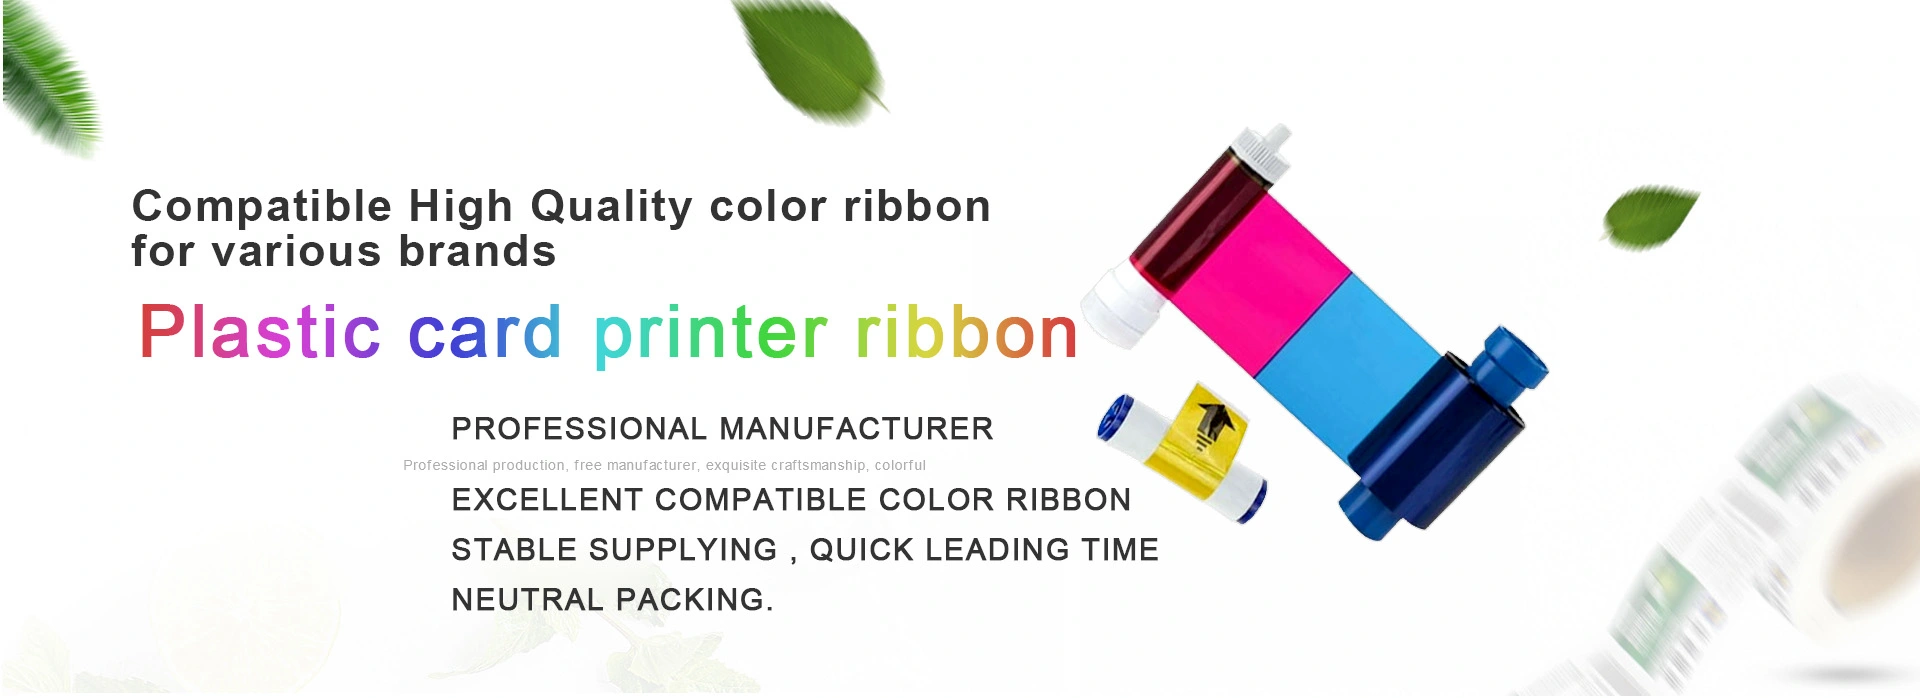 compatible card printer ribbon